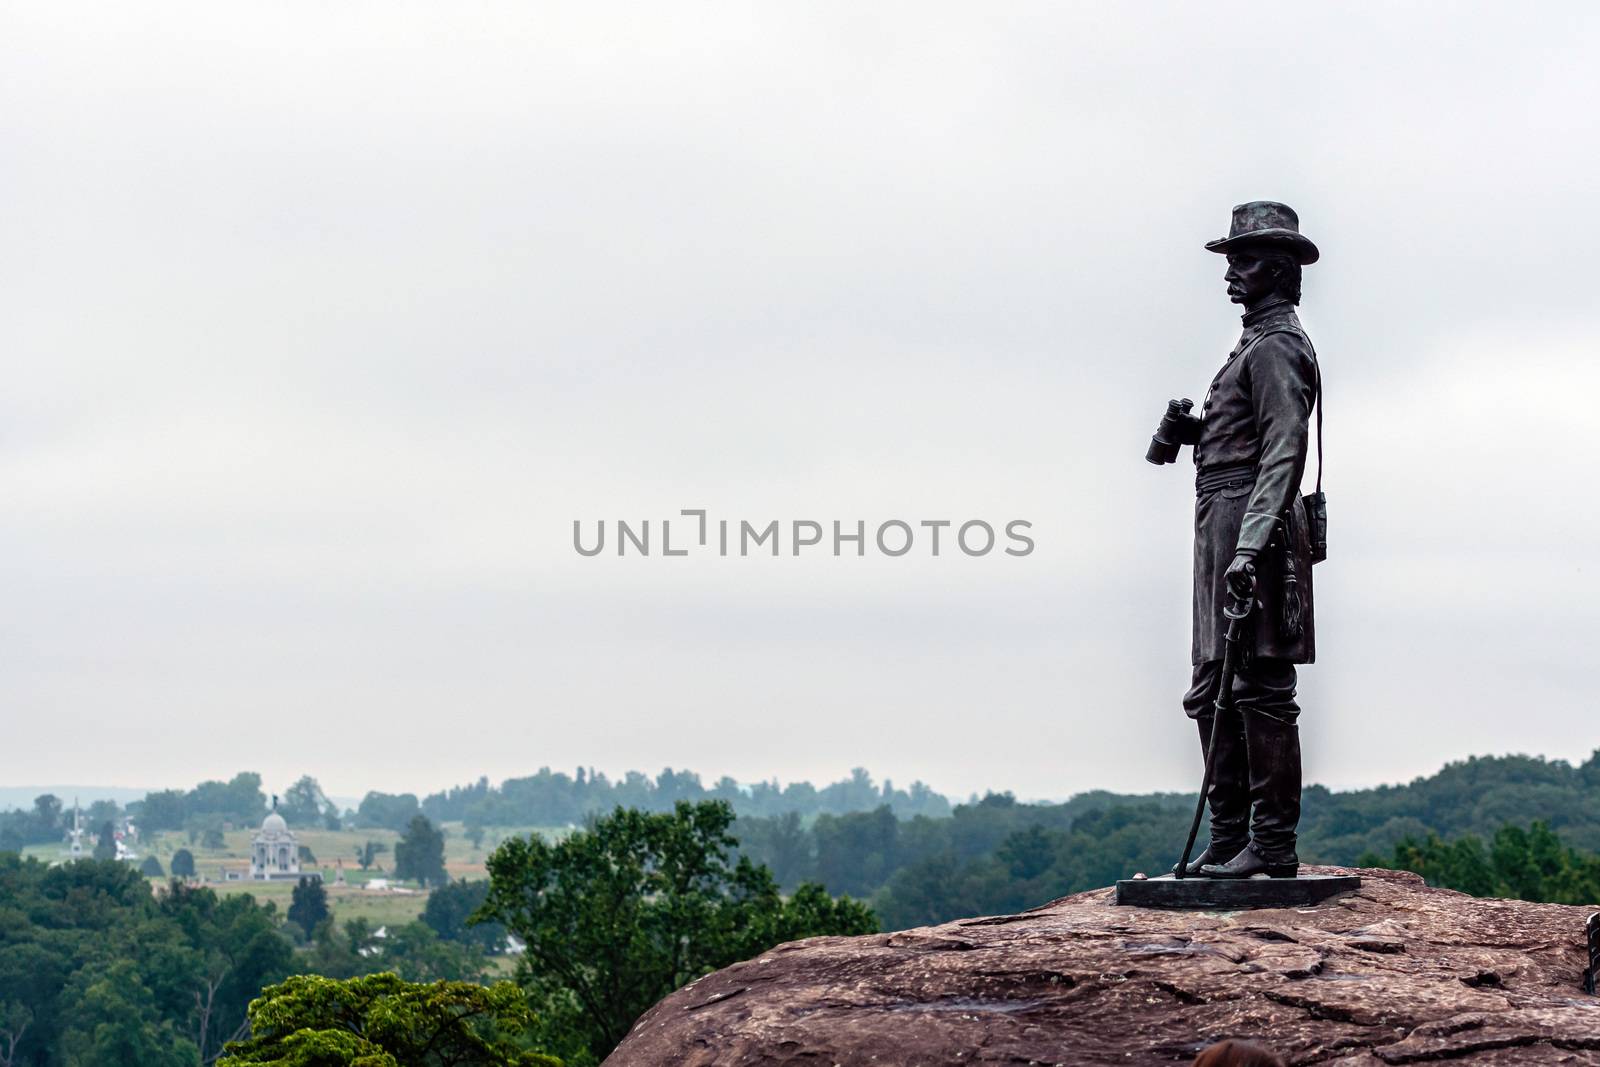 General Warren from Little Round Top in Gettysburg, Pennsylvania